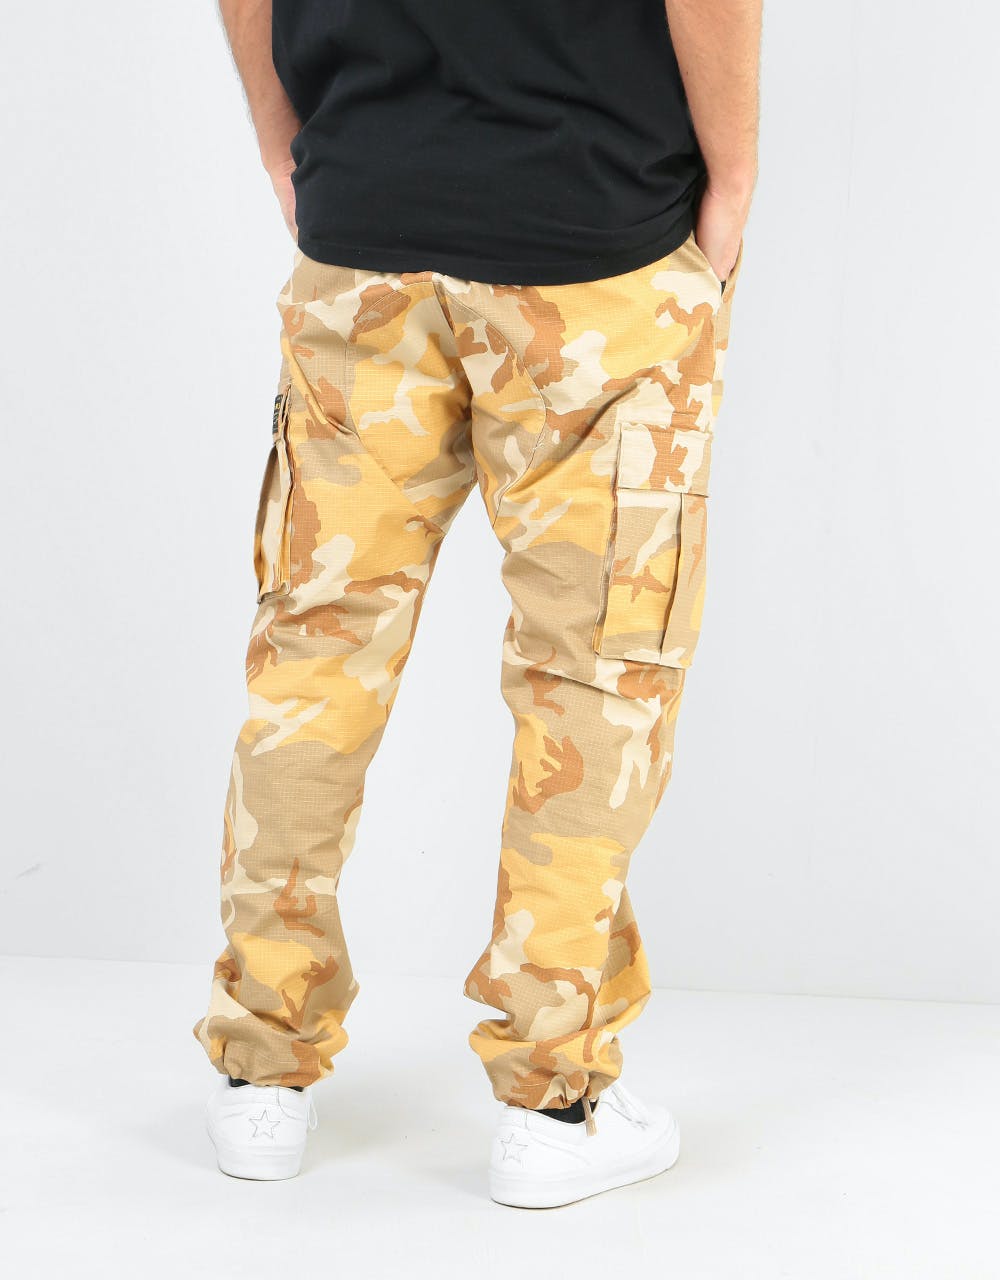 Nike SB FTM ERDL Flex Cargo Pants - Desert Ore